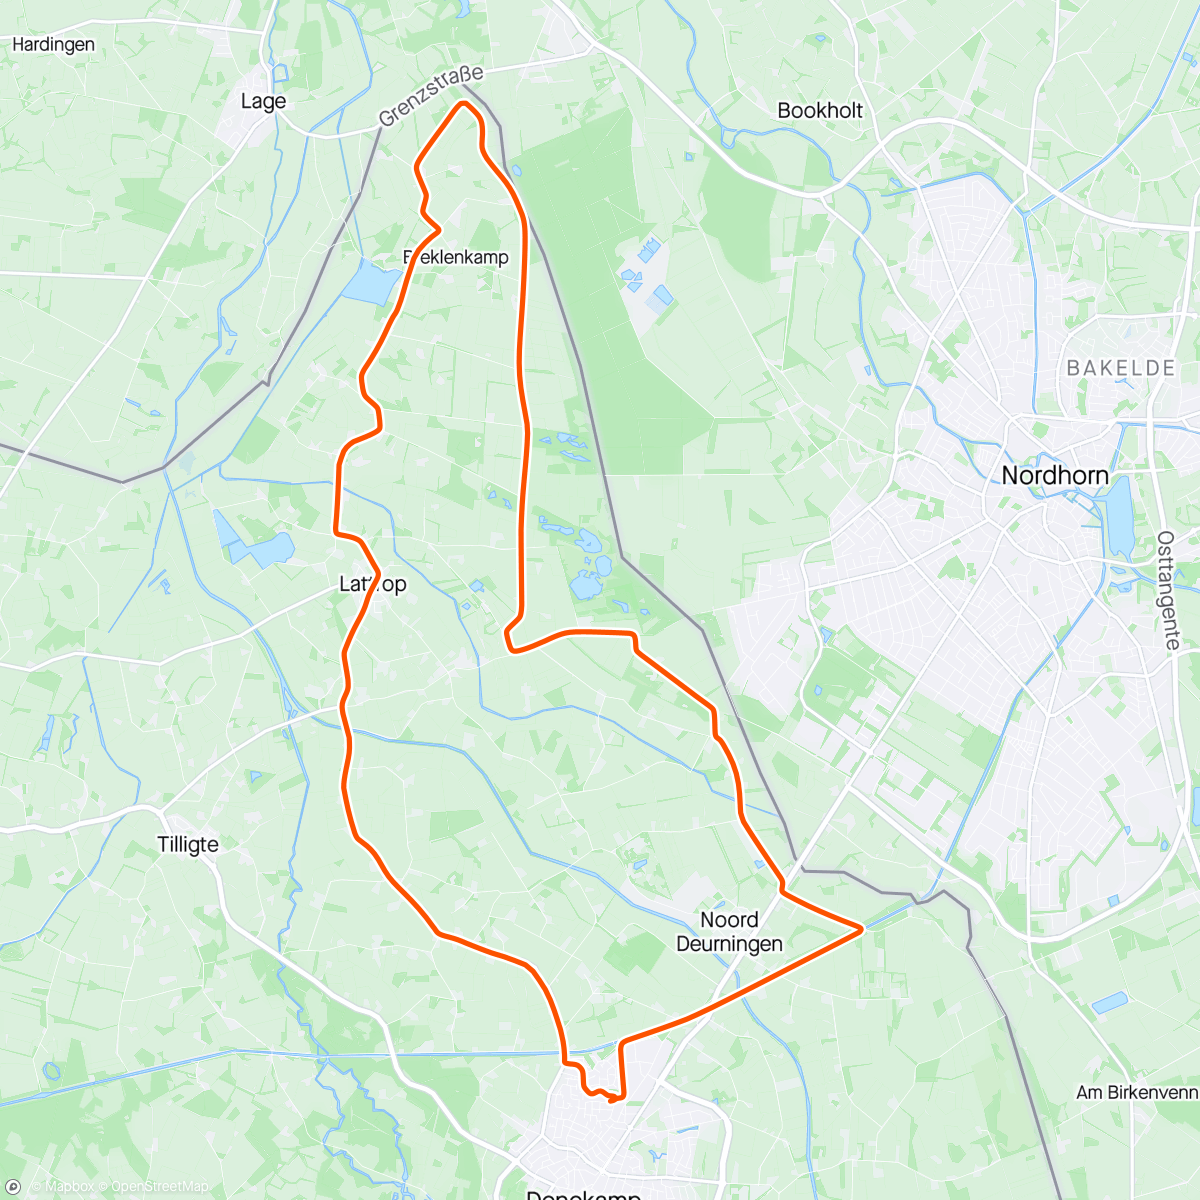 Map of the activity, kort ritje in de kou naar Breklenkamp